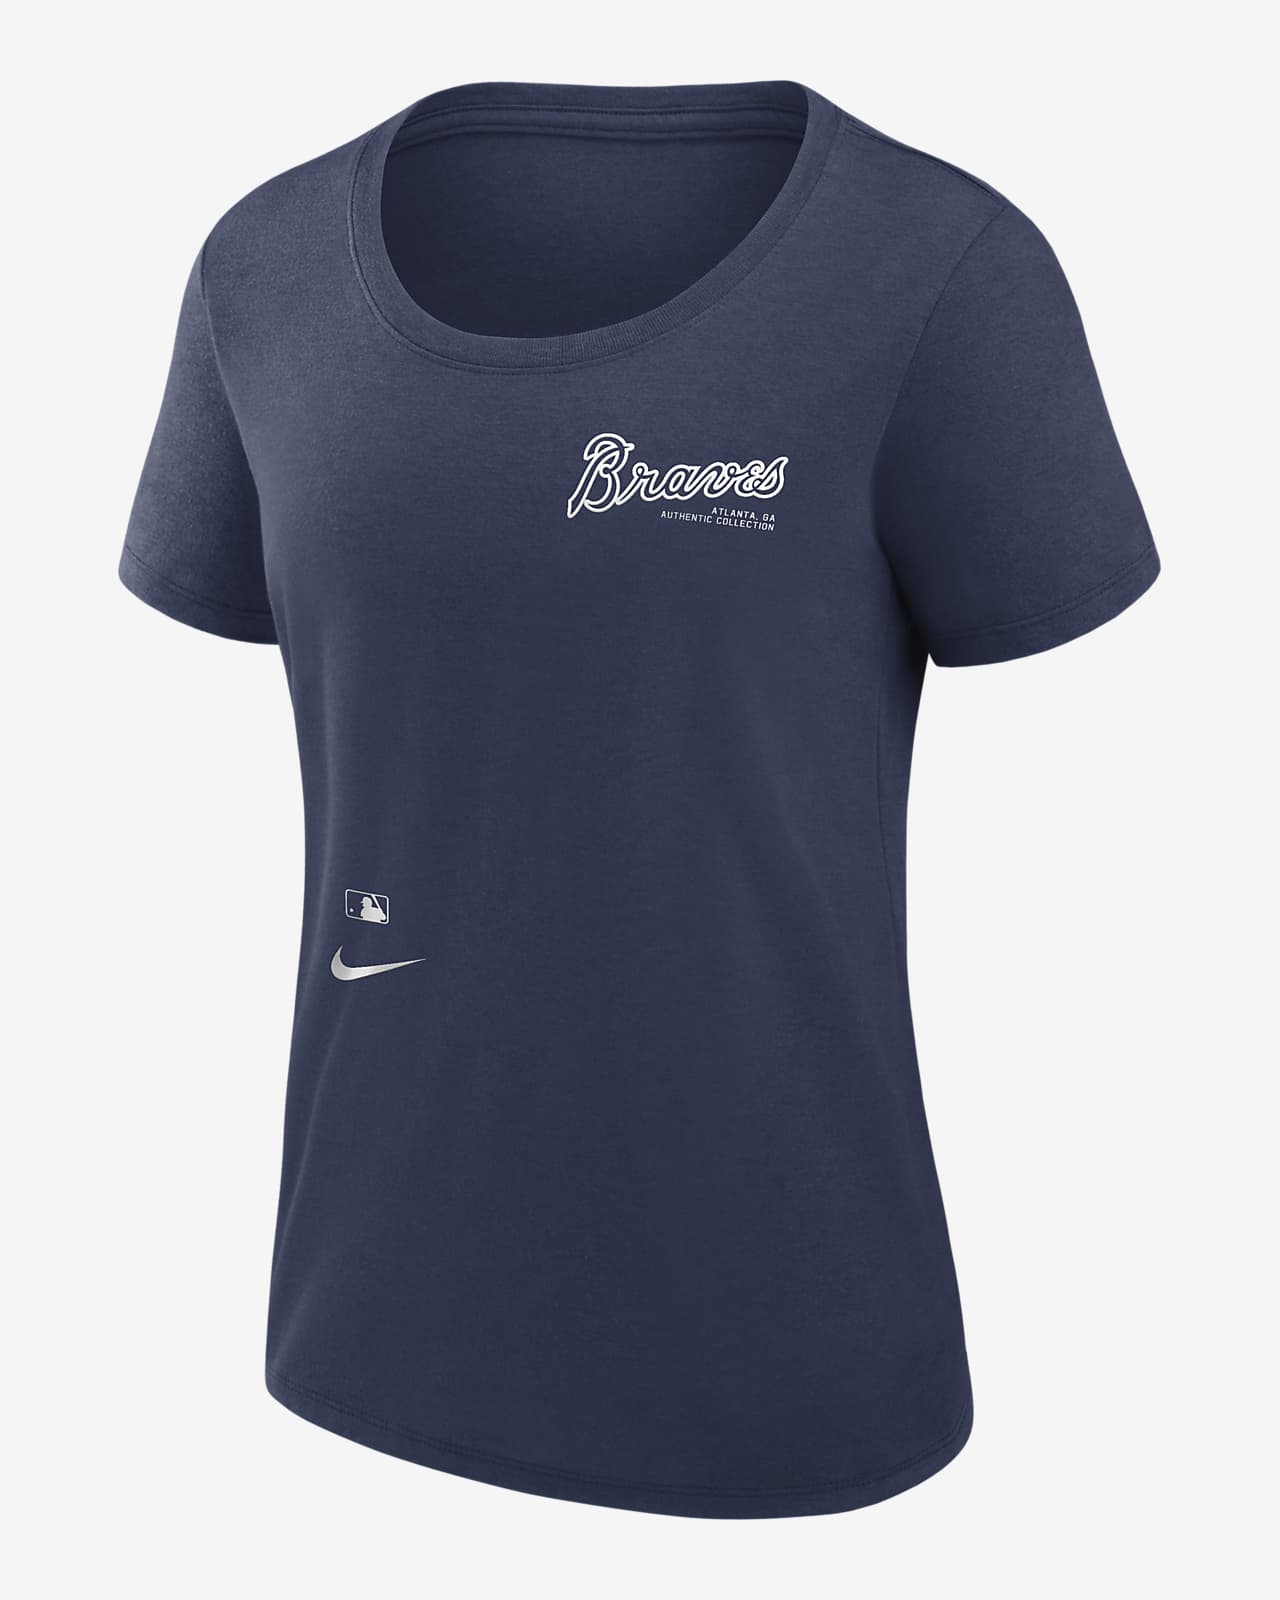 Atlanta Braves Pro Standard Team T-Shirt - Navy